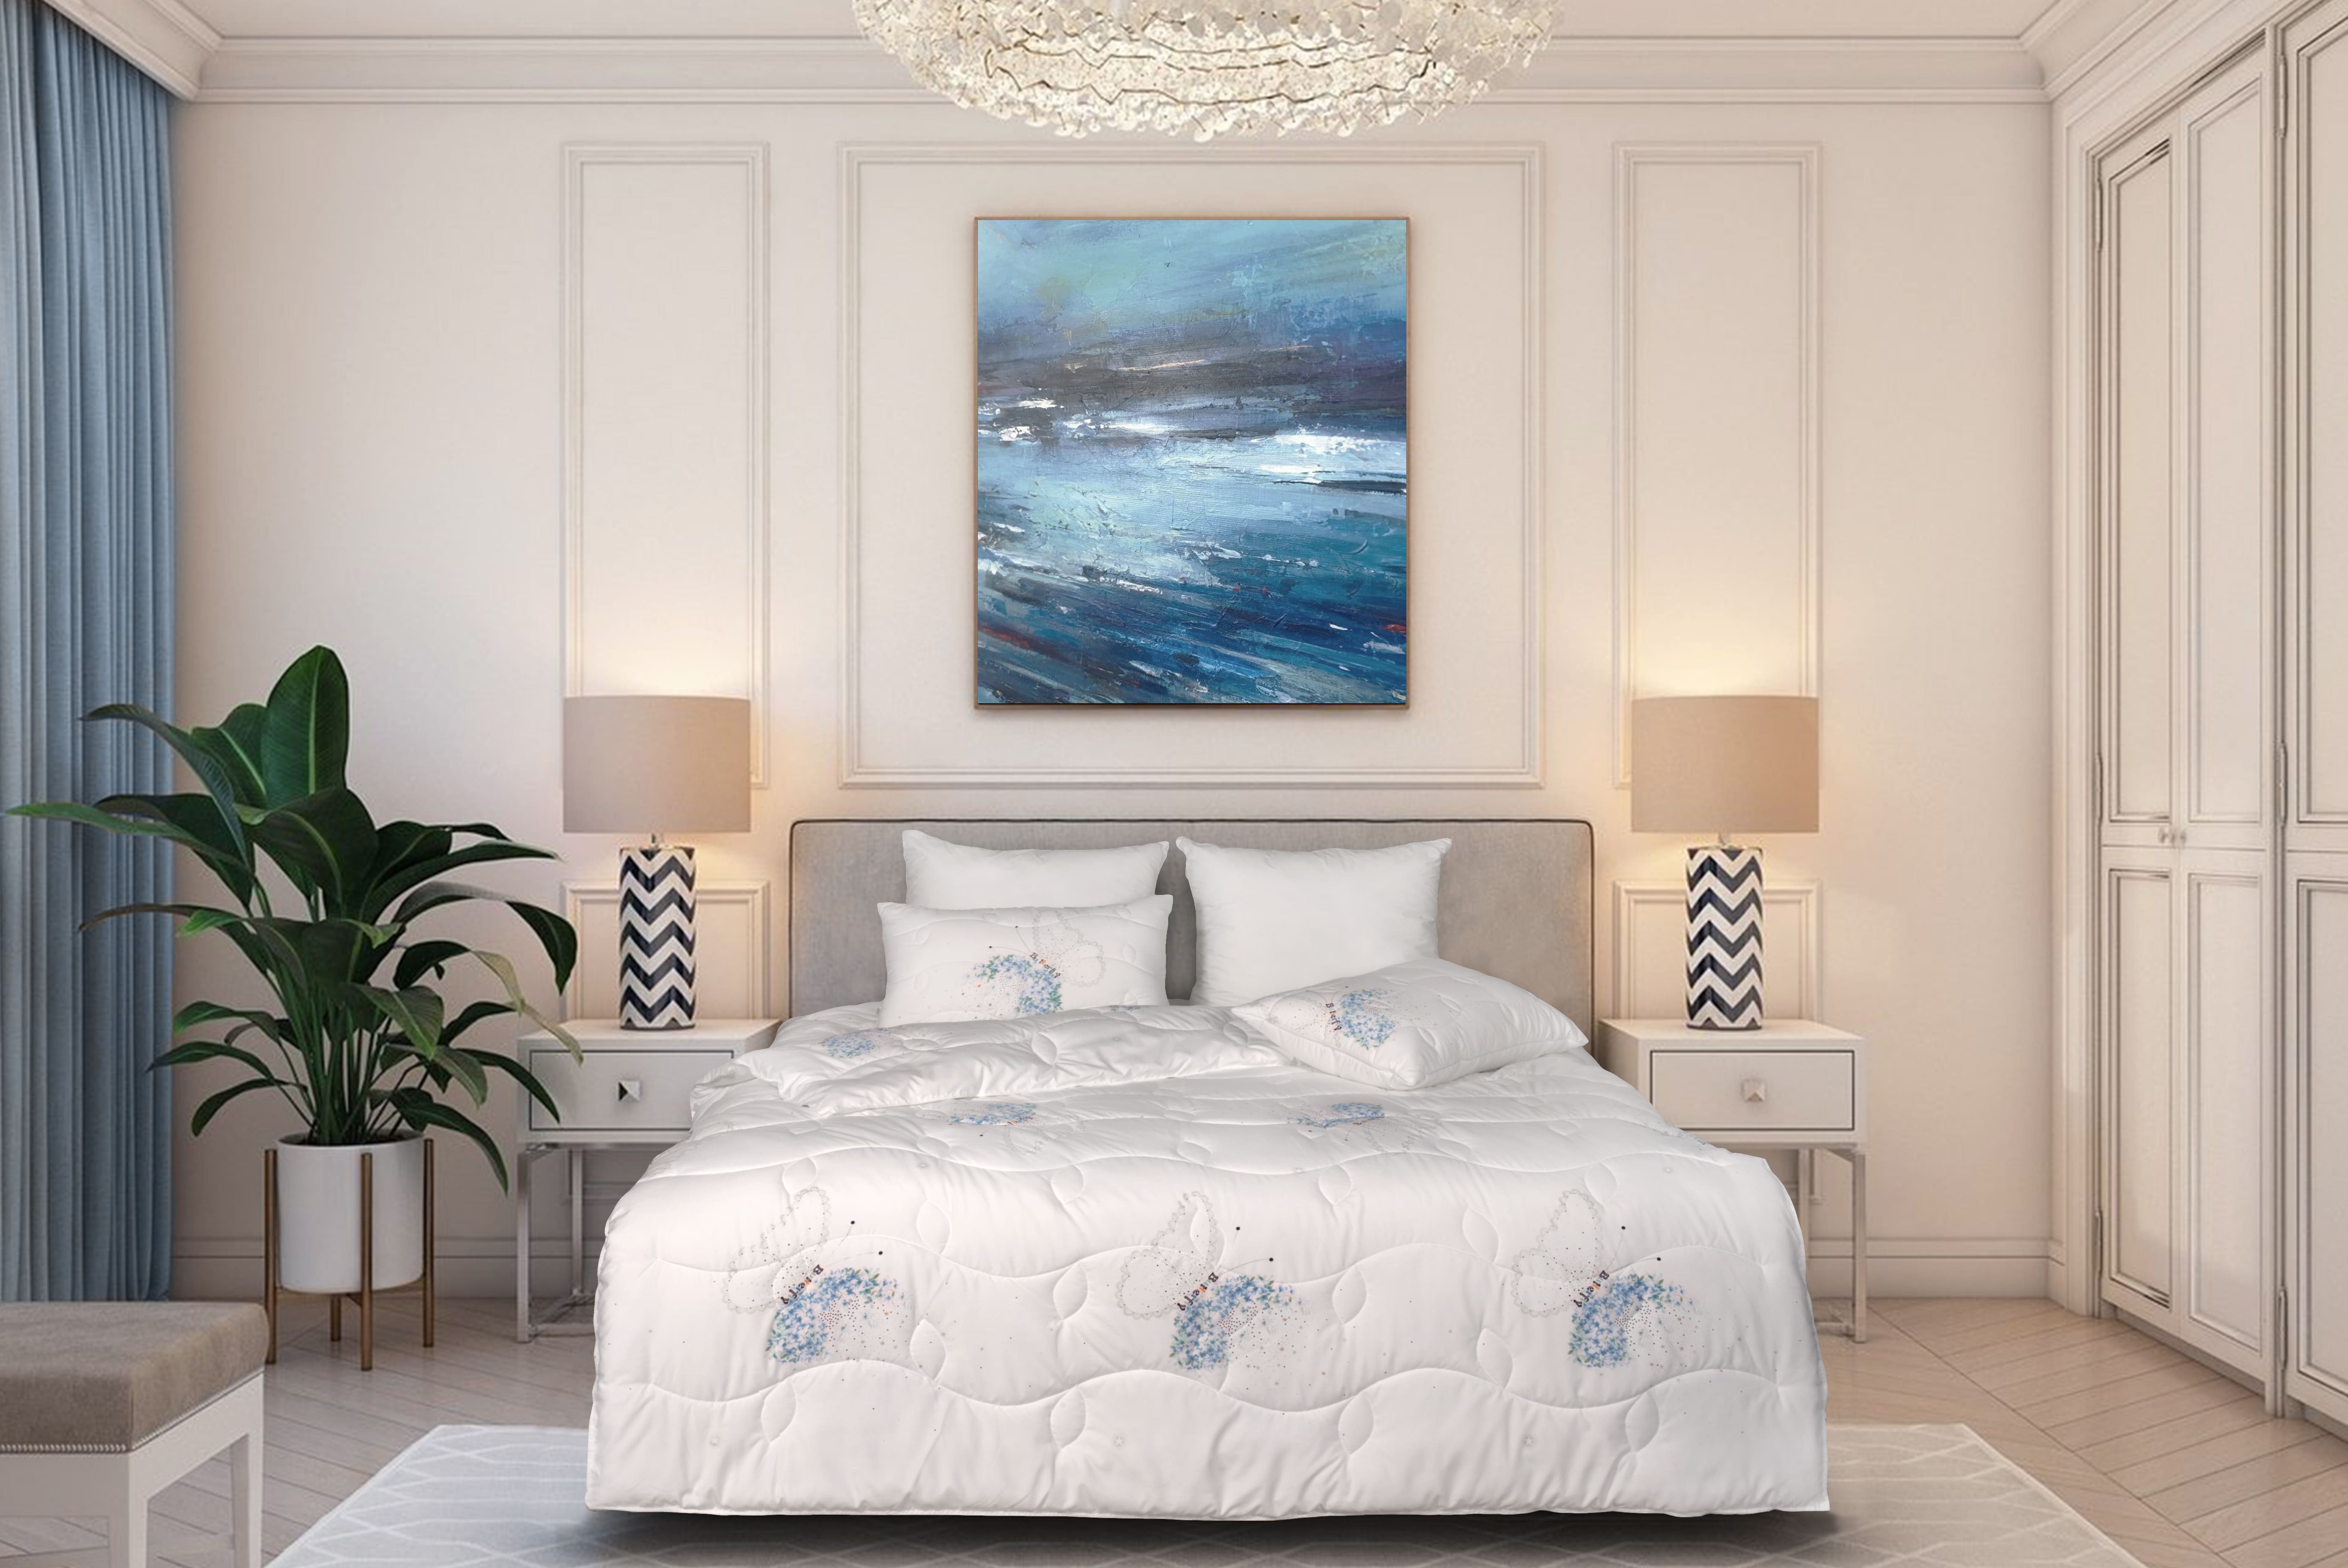 Одеяло Litanika 140х205, цвет набивной рисунок, ТМ Primavelle Bellissimo